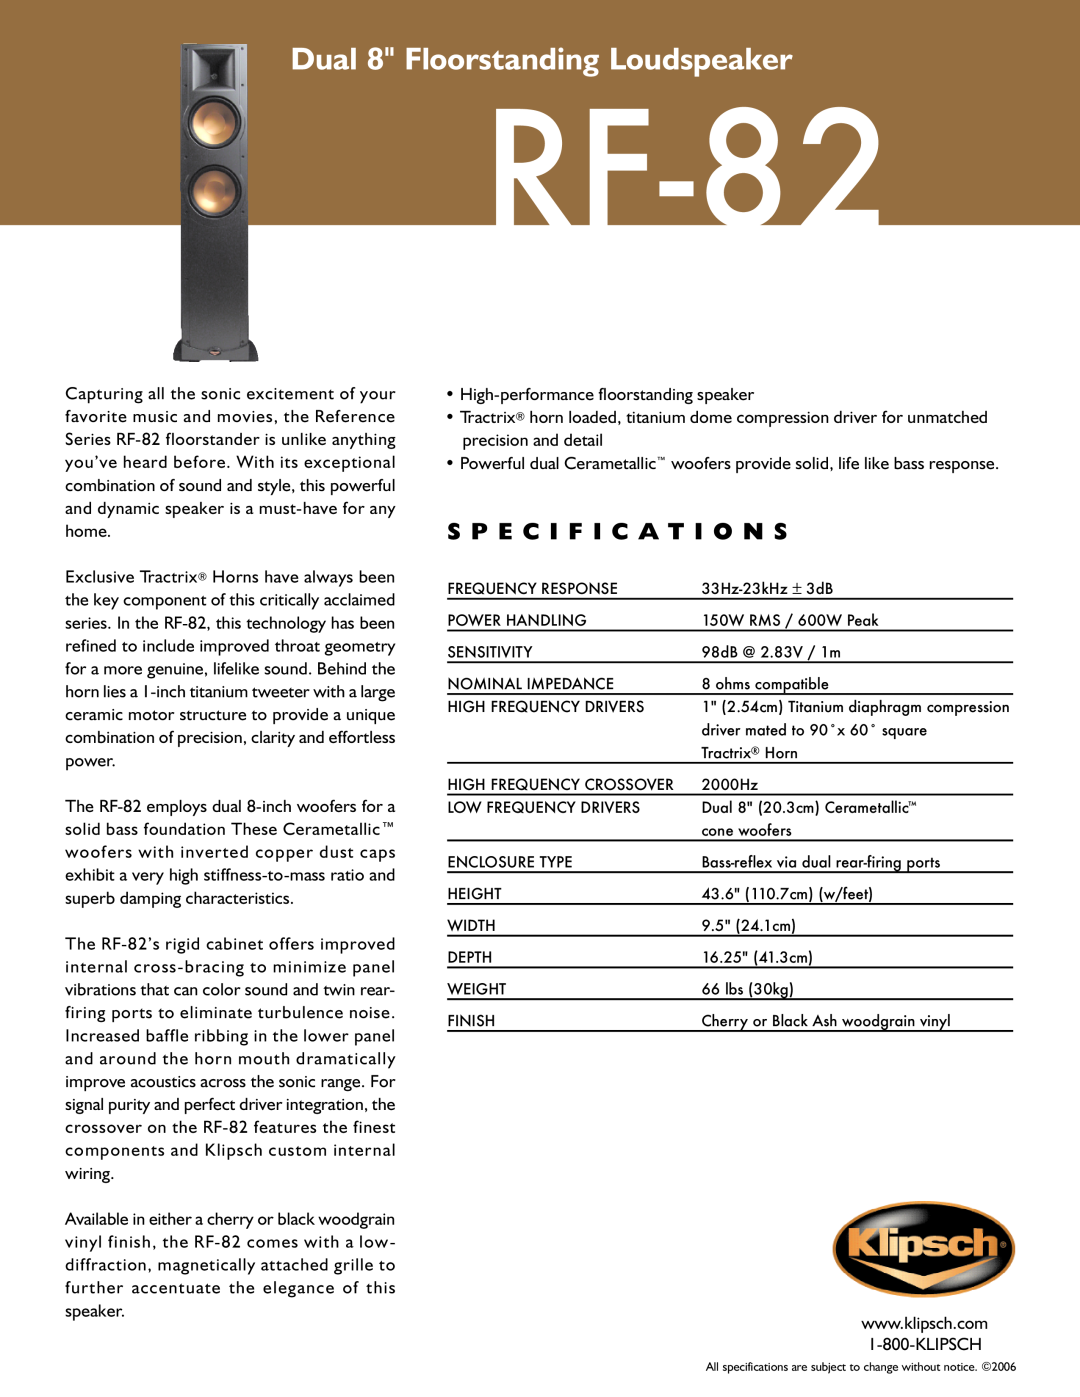 Klipsch RF-82 specifications Dual 8 Floorstanding Loudspeaker, S P E C I F I C A T I O N S 